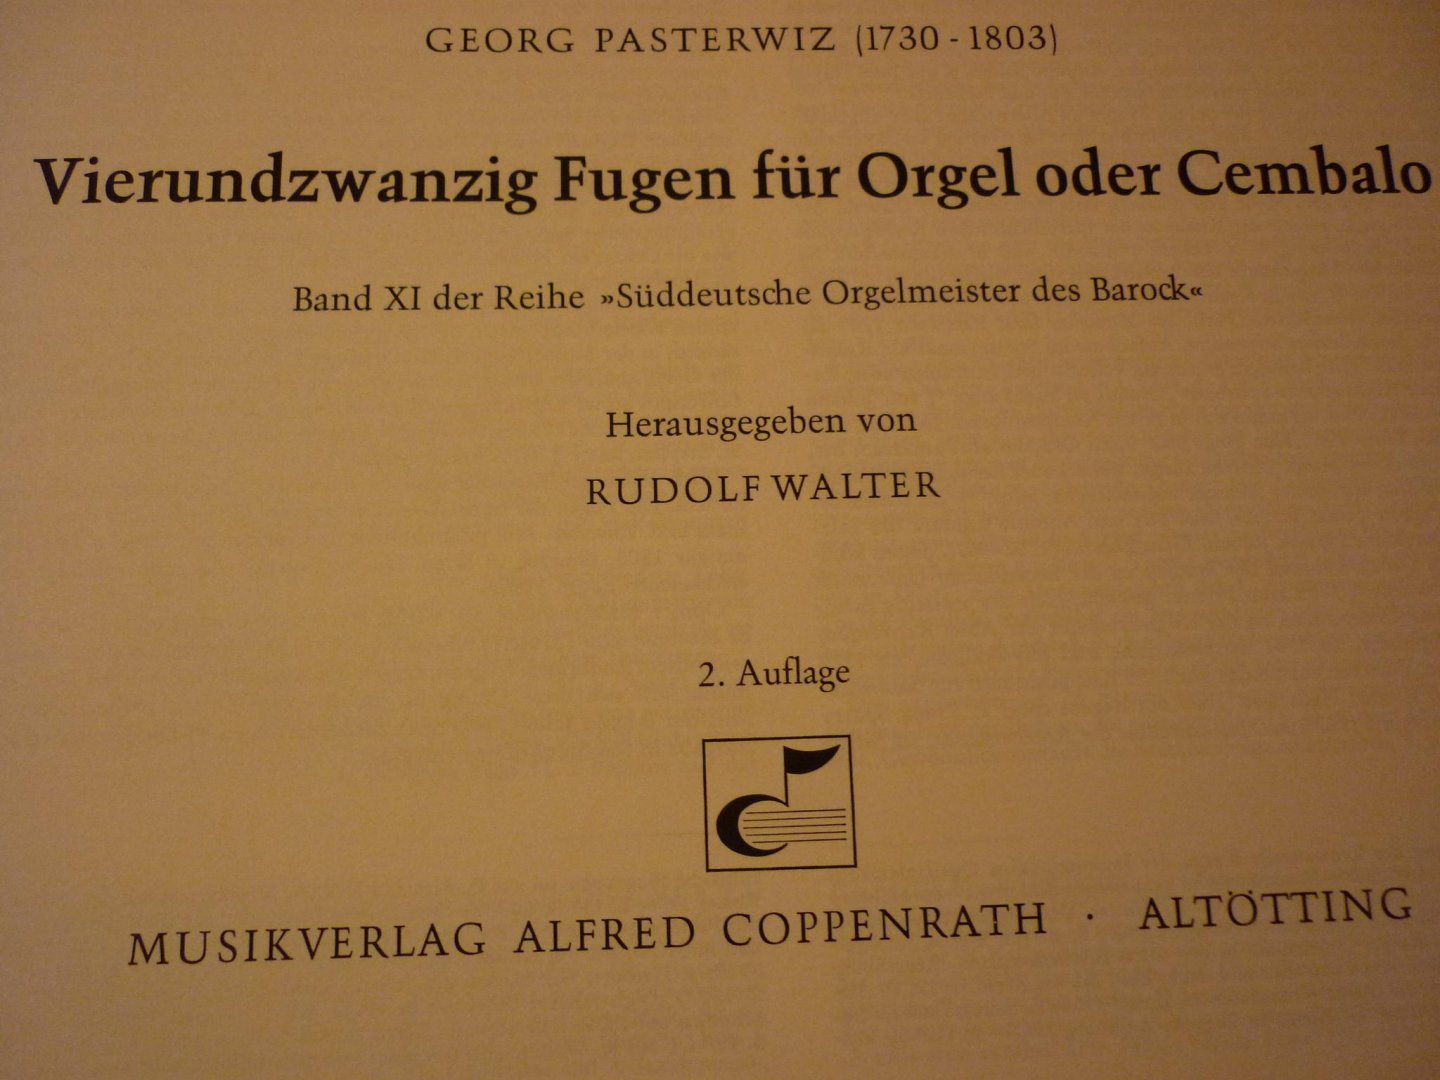 Pasterwiz; Georg (1730 - 1803) - 24 Fugen für Orgel; "Sueddeutsche Orgelmeister Des Barock"; Band XI